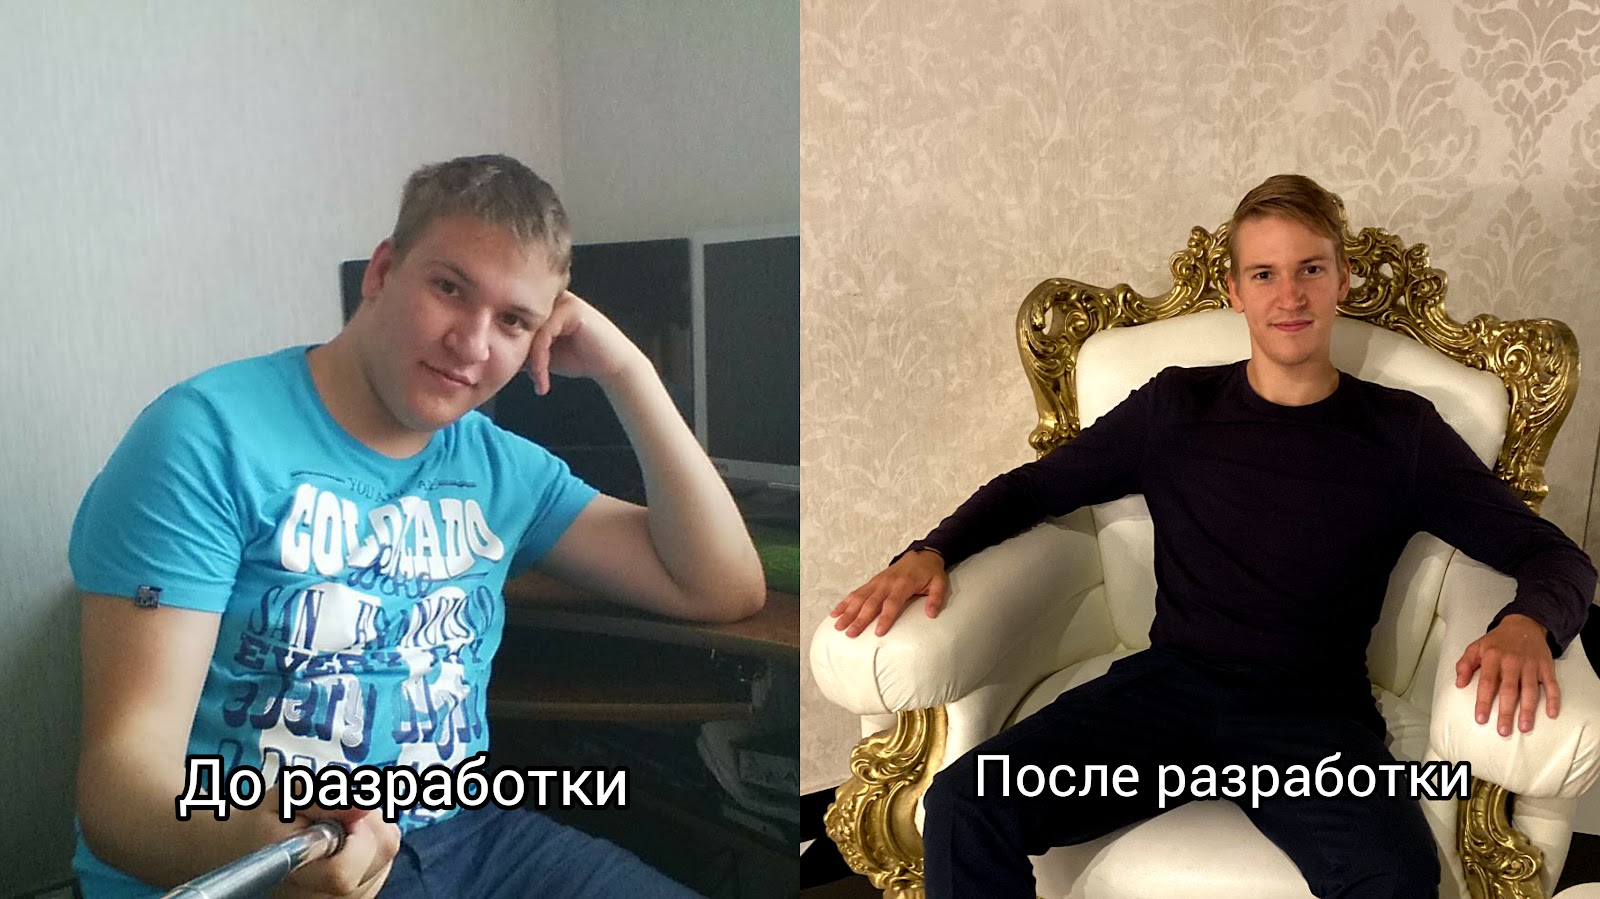 Максим Садаков: до и после проекта (*шутка)